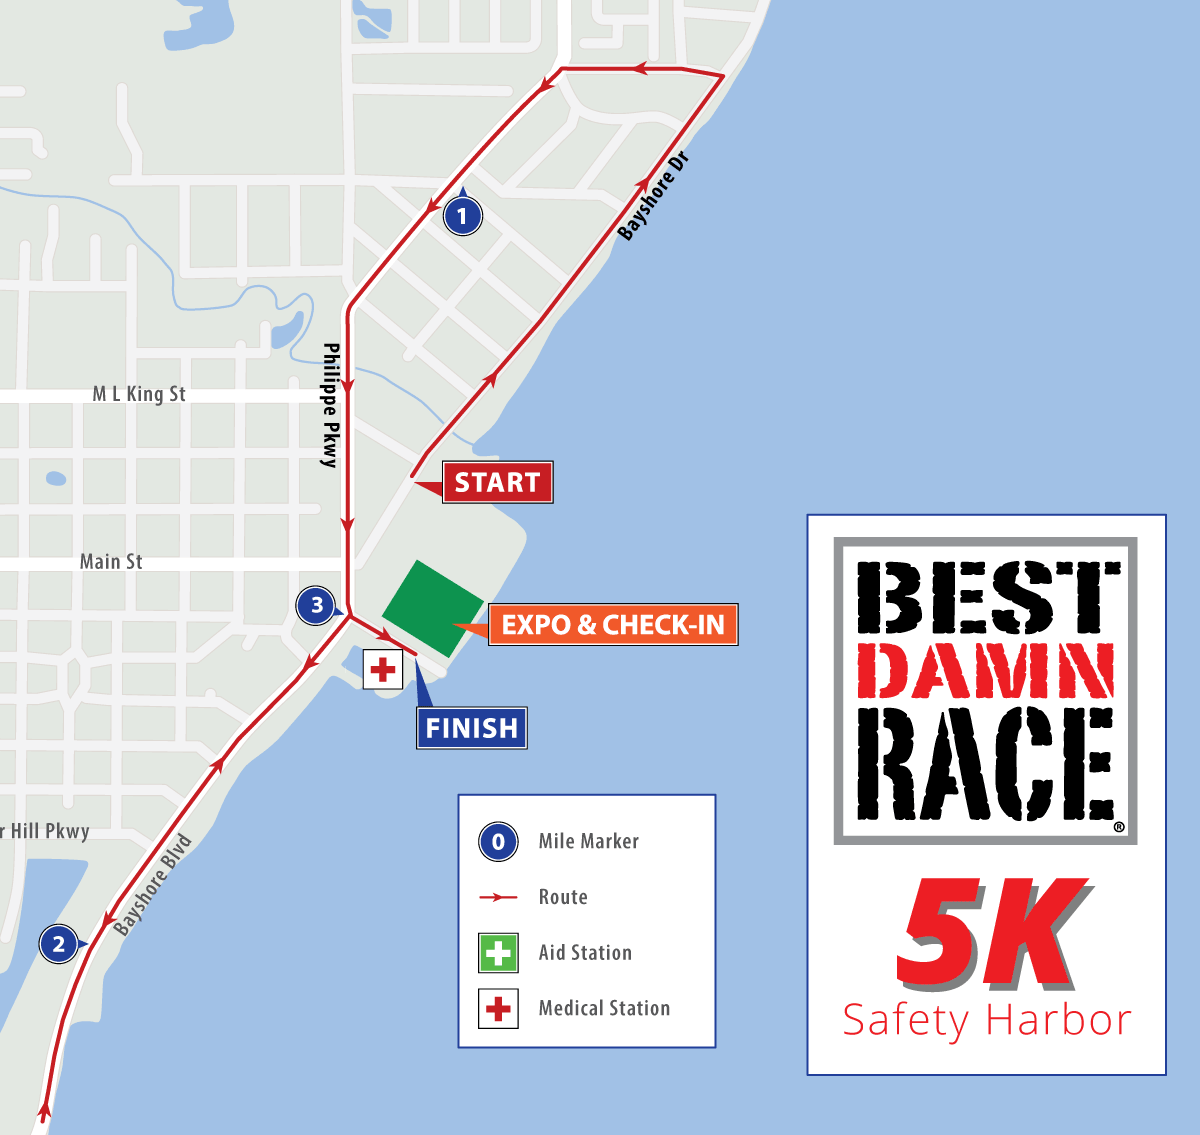 Best Damn Race Safety Harbor, FL - 5K Race Map